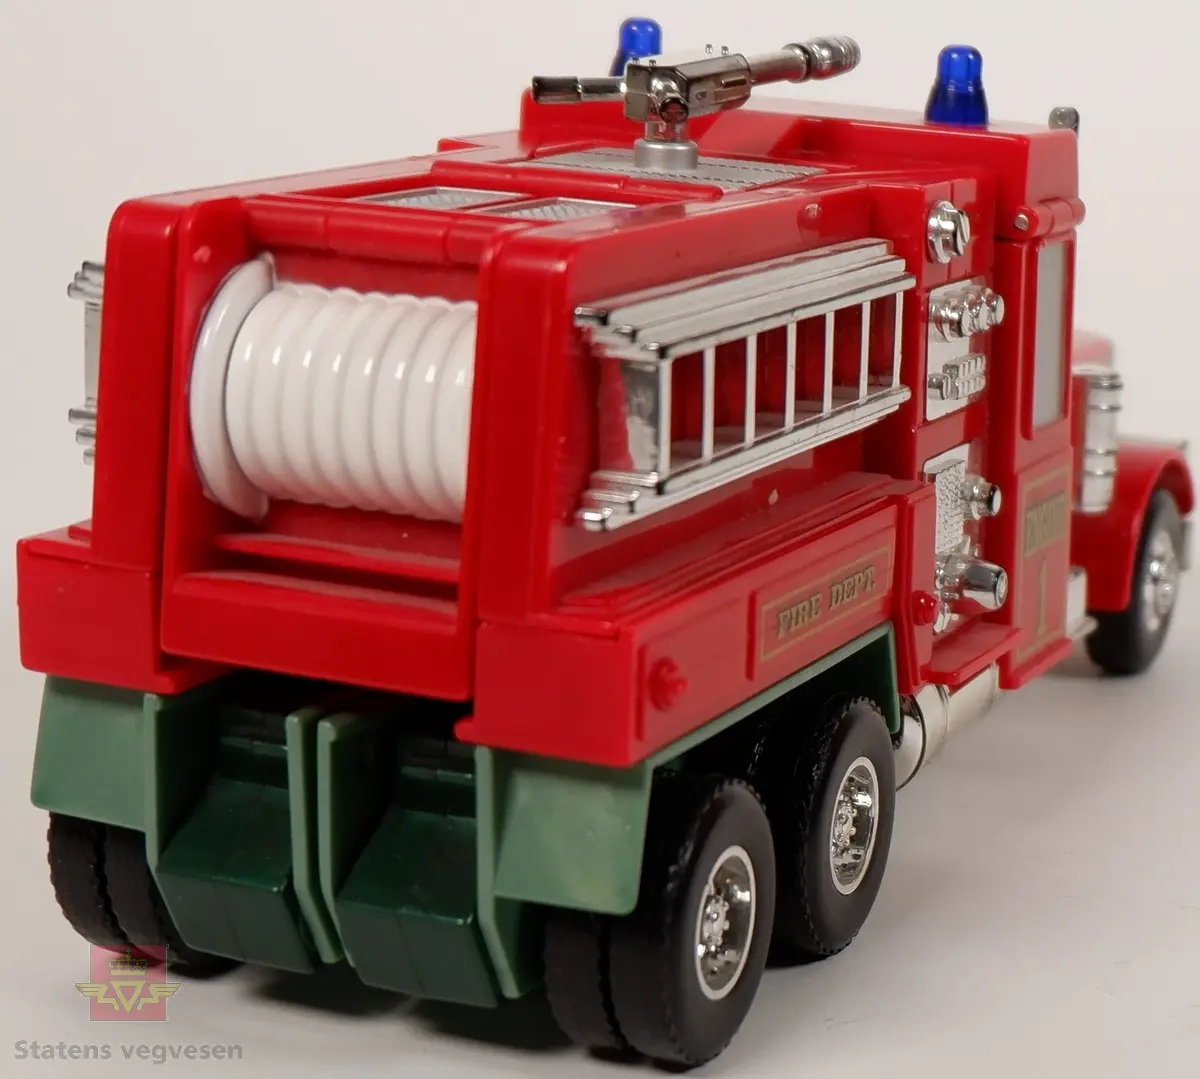 Miniatyrlastebil utformet som brannbil. Lastebilen kan brettes ut slik at det blir en lekefigur. Fargen er rød med påskrifter i gull, detaljer i sølv og to blå blinklamper på taket. Miniatyren er laget av plast og metall.